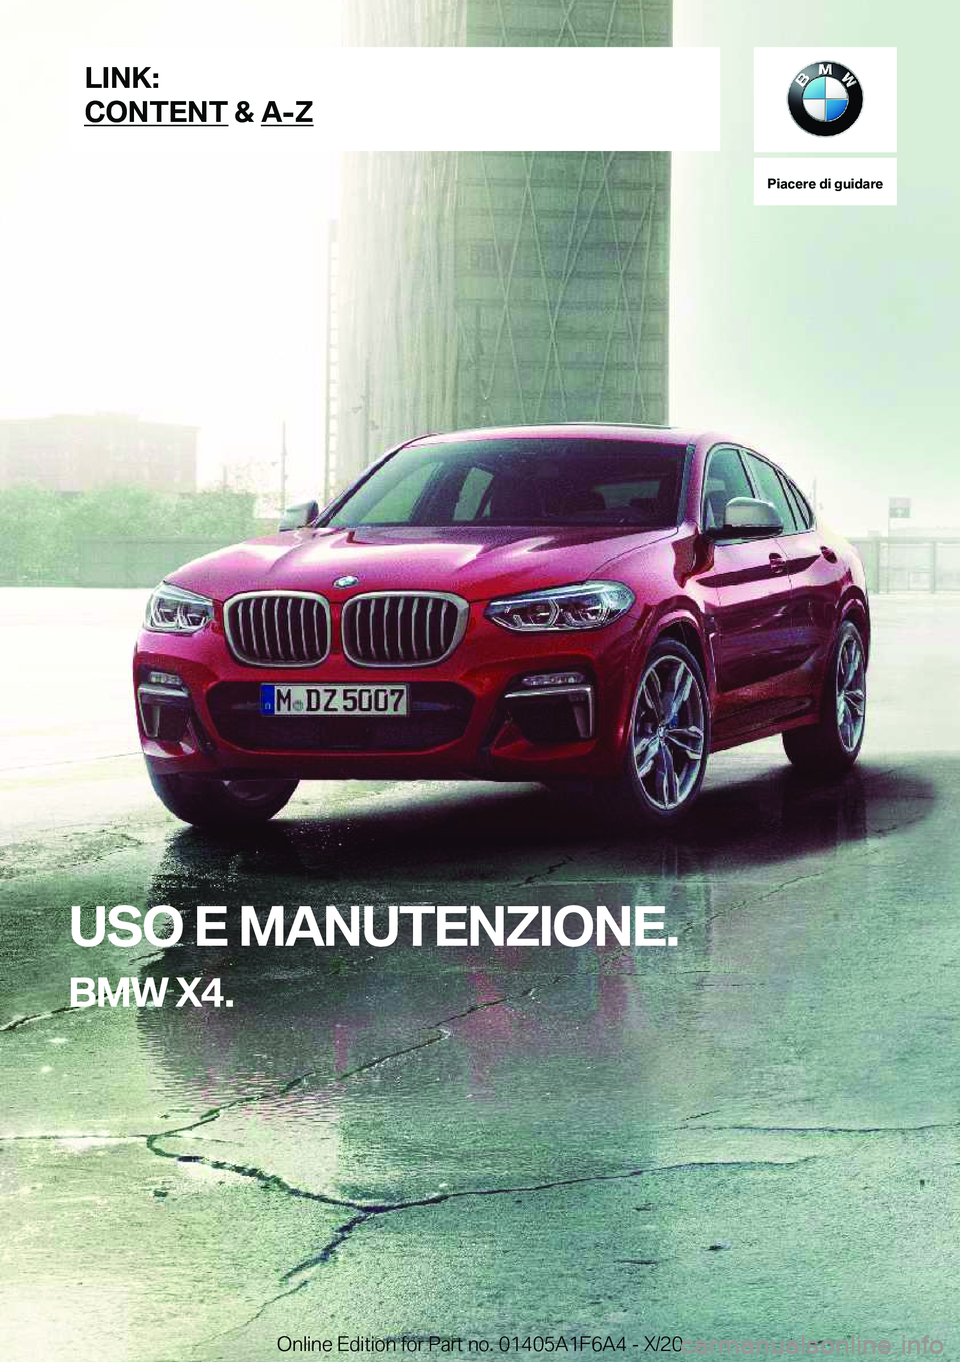 BMW X4 2021  Libretti Di Uso E manutenzione (in Italian) �P�i�a�c�e�r�e��d�i��g�u�i�d�a�r�e
�U�S�O��E��M�A�N�U�T�E�N�Z�I�O�N�E�.
�B�M�W��X�4�.�L�I�N�K�:
�C�O�N�T�E�N�T��&��A�-�Z�O�n�l�i�n�e��E�d�i�t�i�o�n��f�o�r��P�a�r�t��n�o�.��0�1�4�0�5�A�1�F�